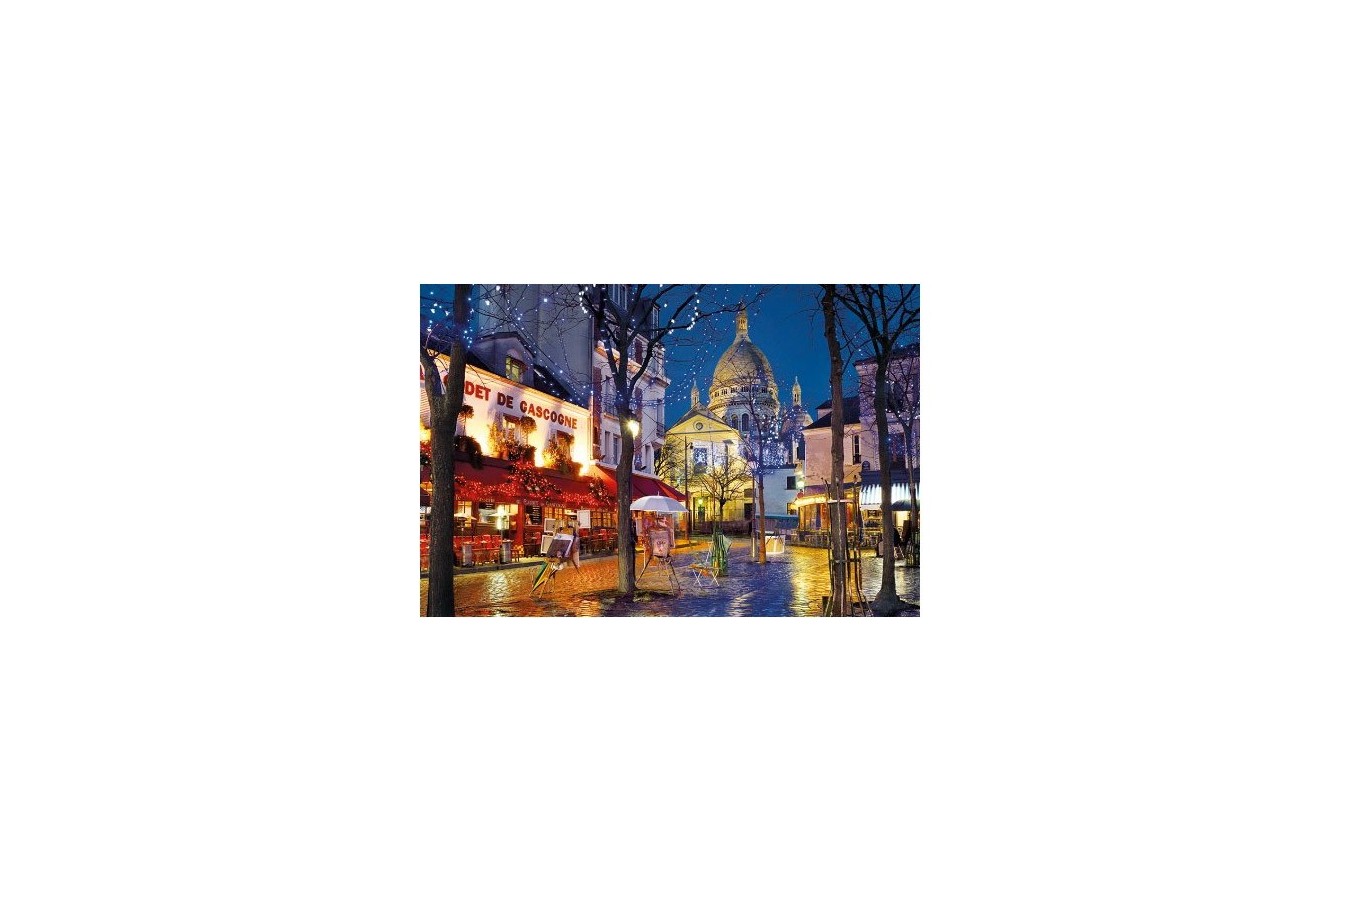 Puzzle Clementoni - Paris Montmartre, 1500 piese (46817)